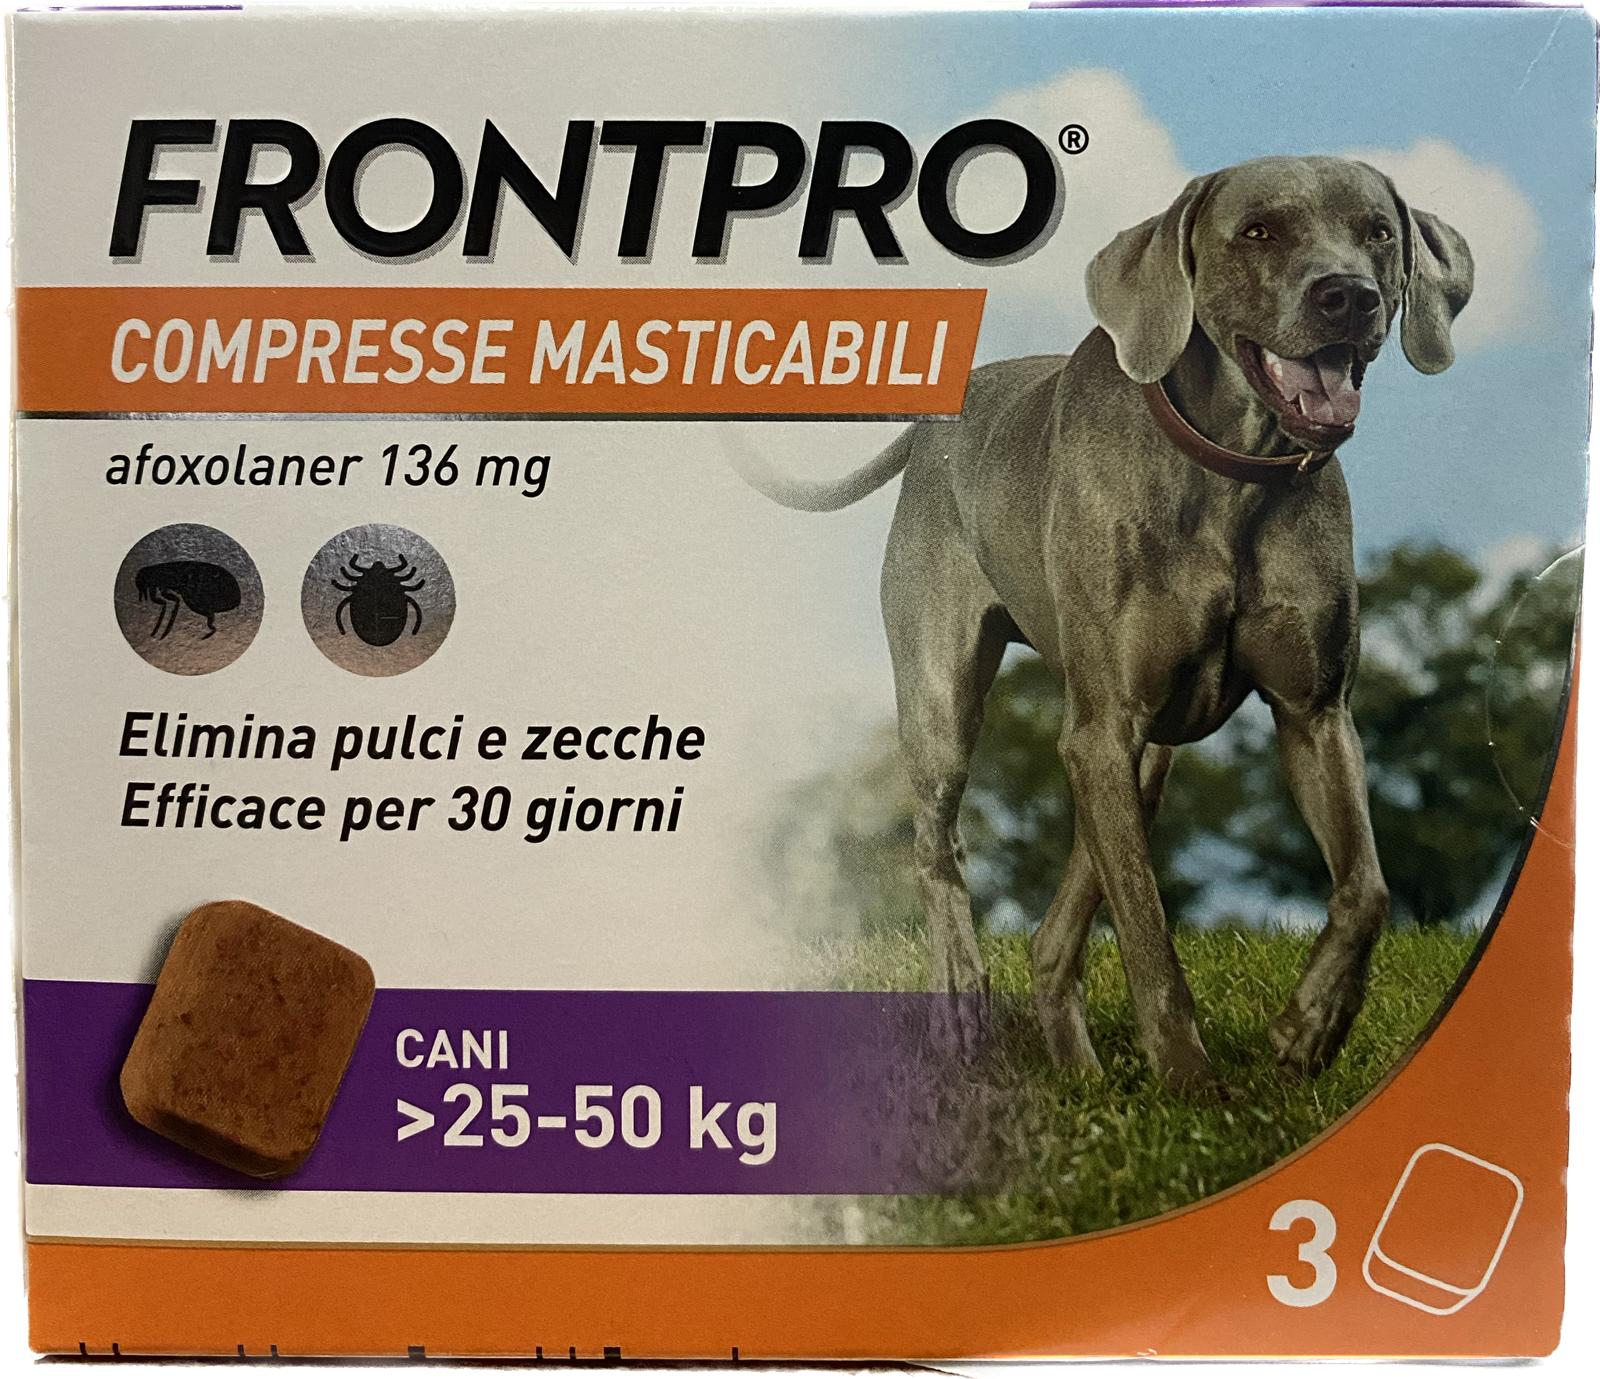 Frontpro Compresse Masticabile 3 compresse 25-50Kg